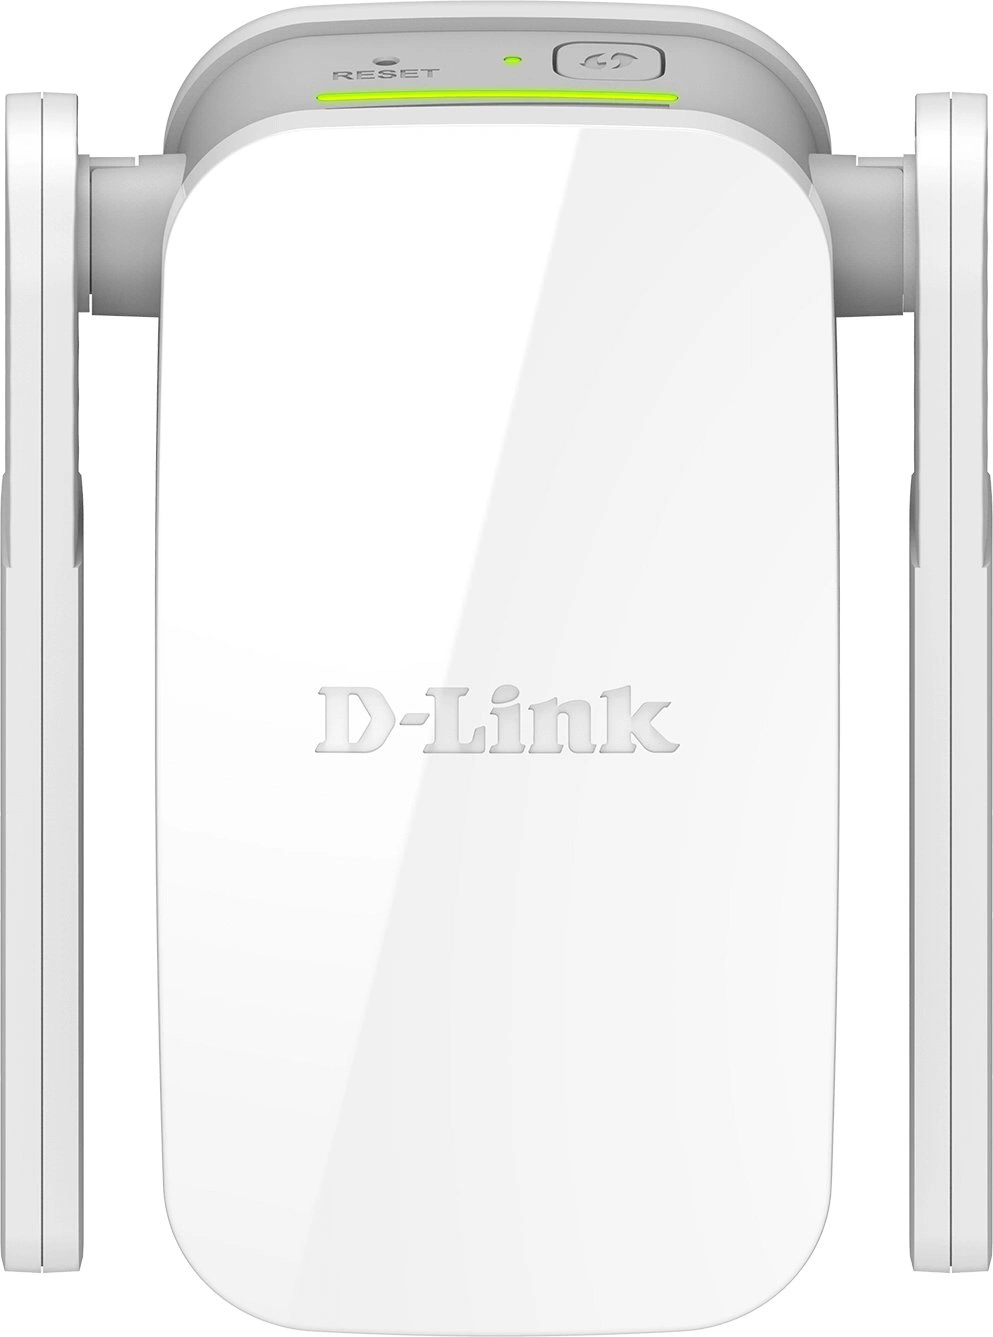 D-Link DAP-1610 WiFi extender